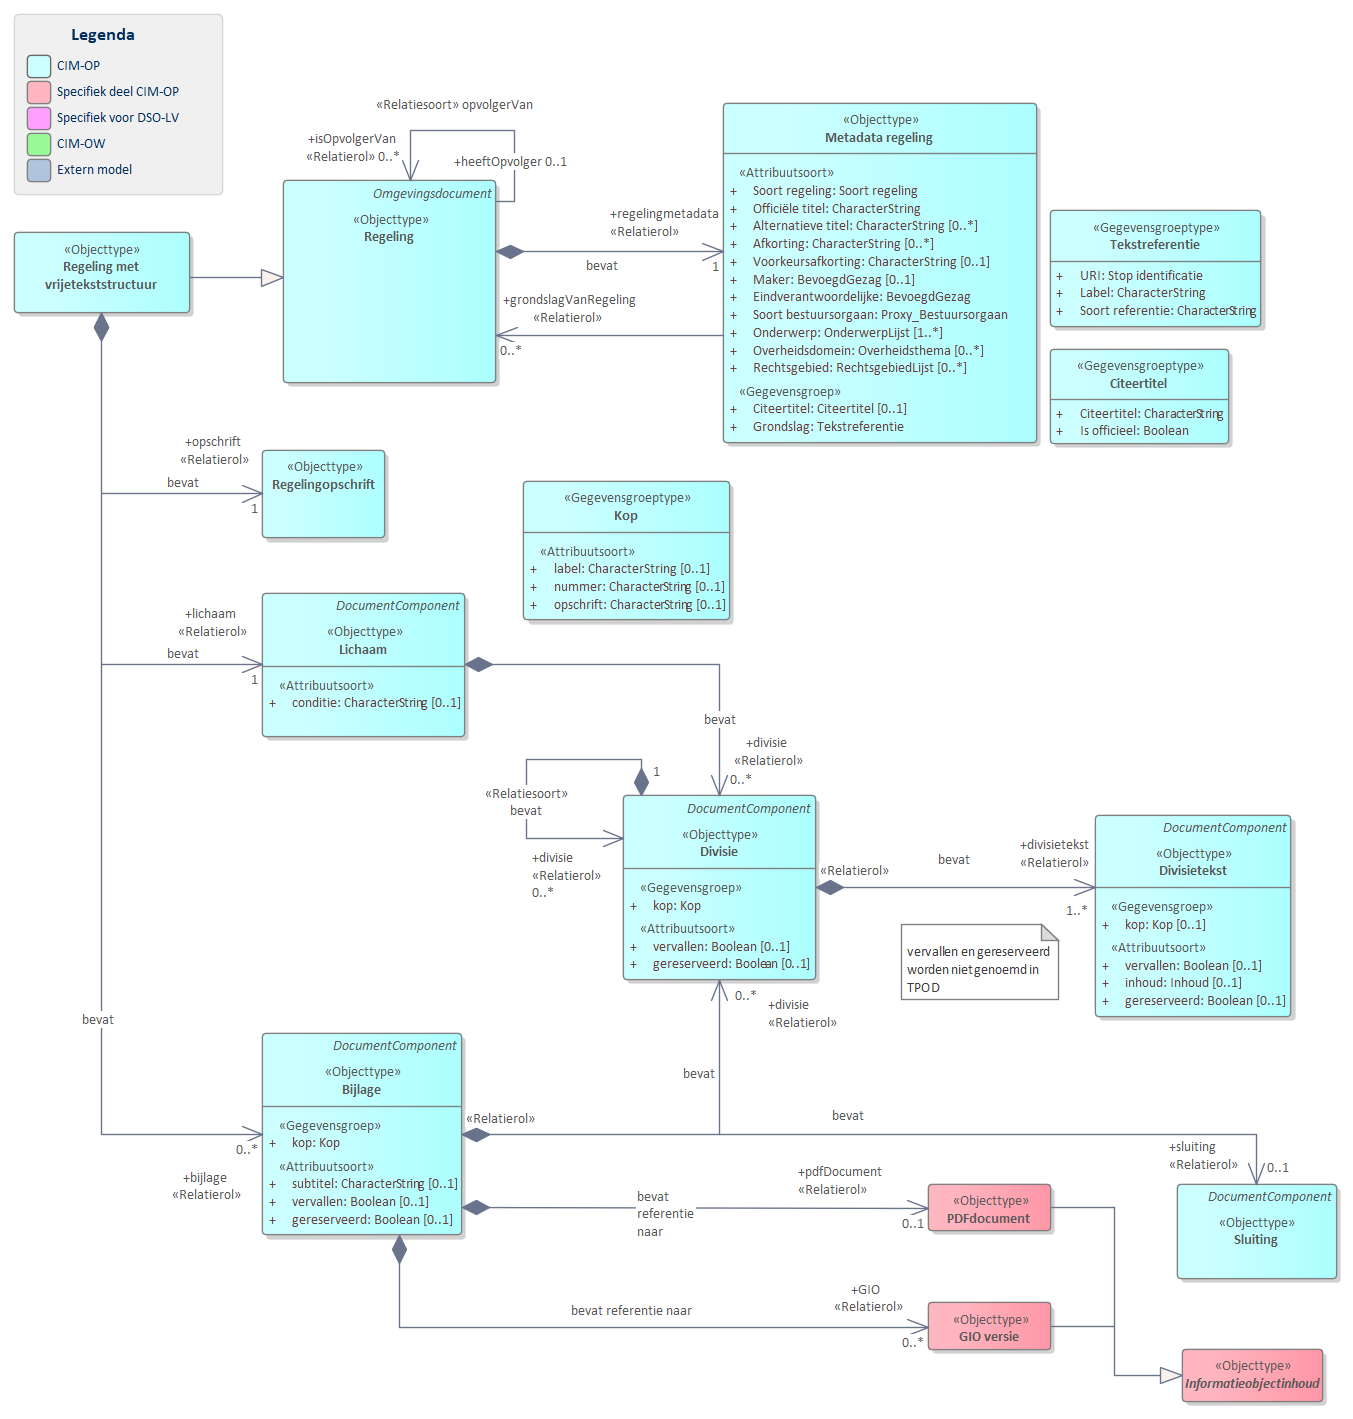 Diagram 
                        UML diagram voor `Regeling met vrijetekststructuur`.
                        Model voor regelingen met een vrijetekststructuur.
                        
                        Een `Regeling met vrijetekststructuur` bevat de volgende basisonderdelen:
                        
                        
                           `Metadata regeling` bevat de gegevens over een regeling zoals titel en maker.
                           `Opschrift`
                           `Lichaam`
                           `Bijlage`
                        
                        
                        
                        De meeste van delen van de basisonderdelen zijn weer verder opgedeeld in onderdelen.
                        
                        
                           
                              
                                 Referentie naar STOP
                              
                           
                        
                     